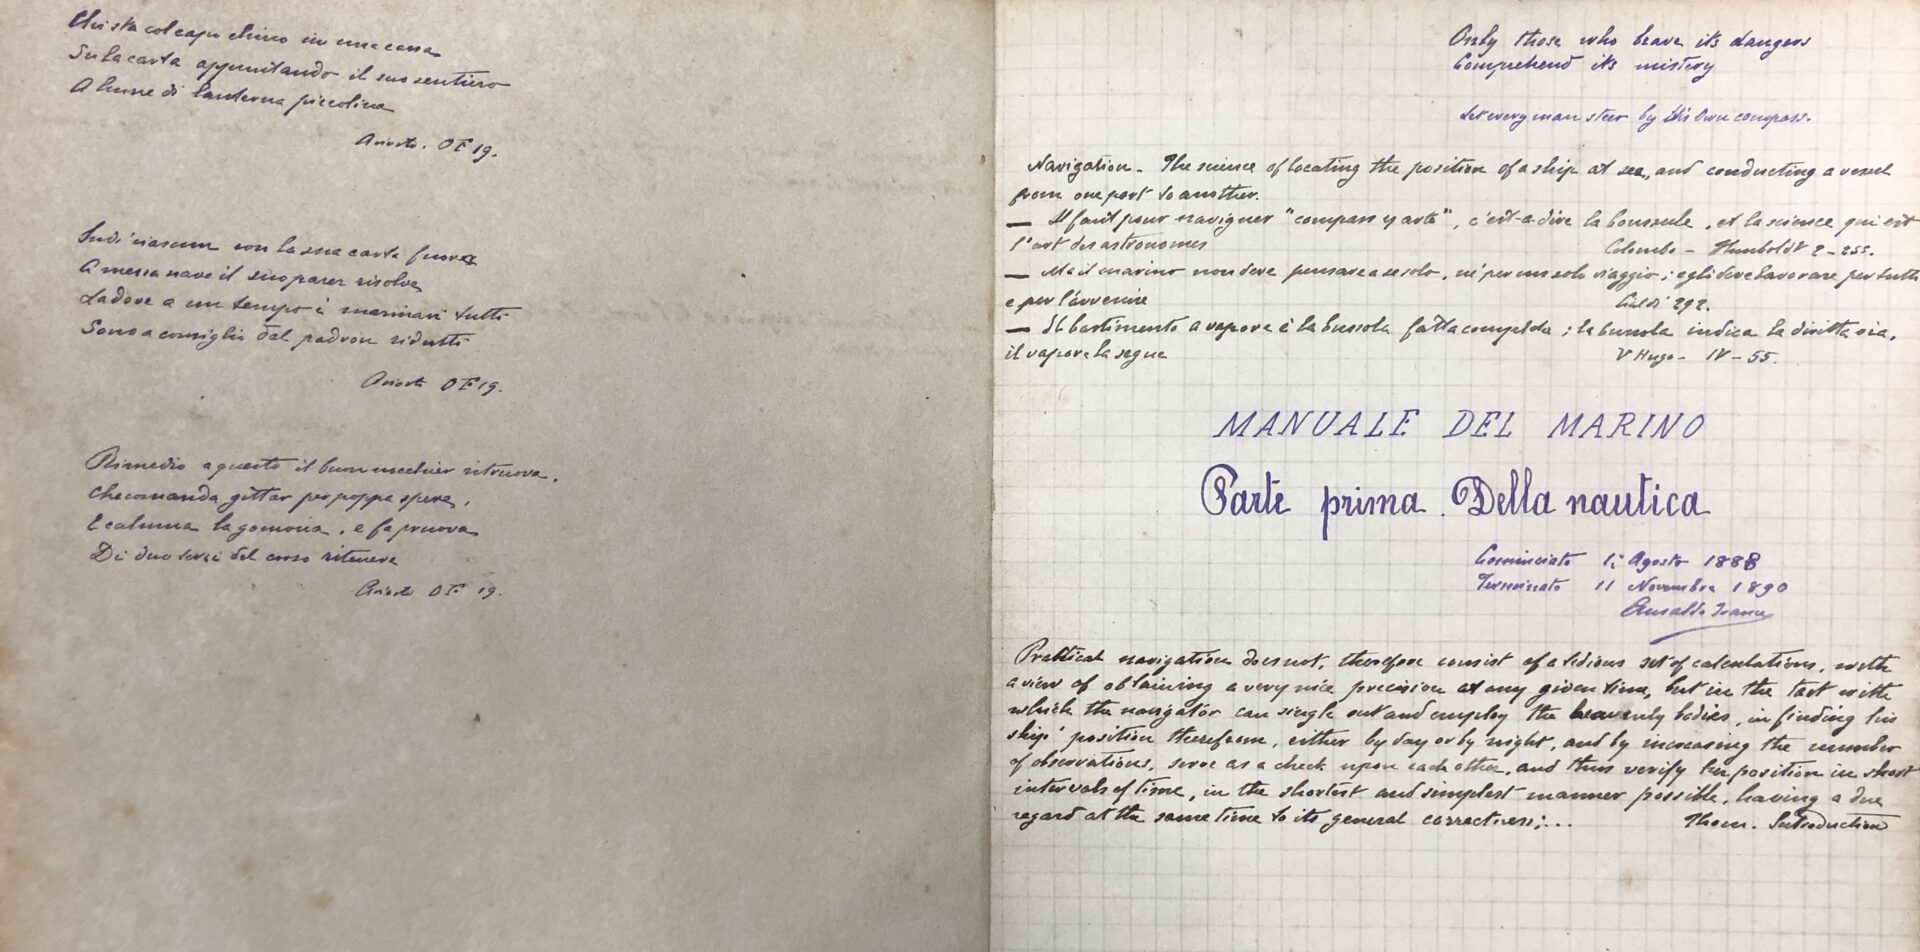 Manuale del marino - della nautica (1888). FONTE: Fondazione Ansaldo